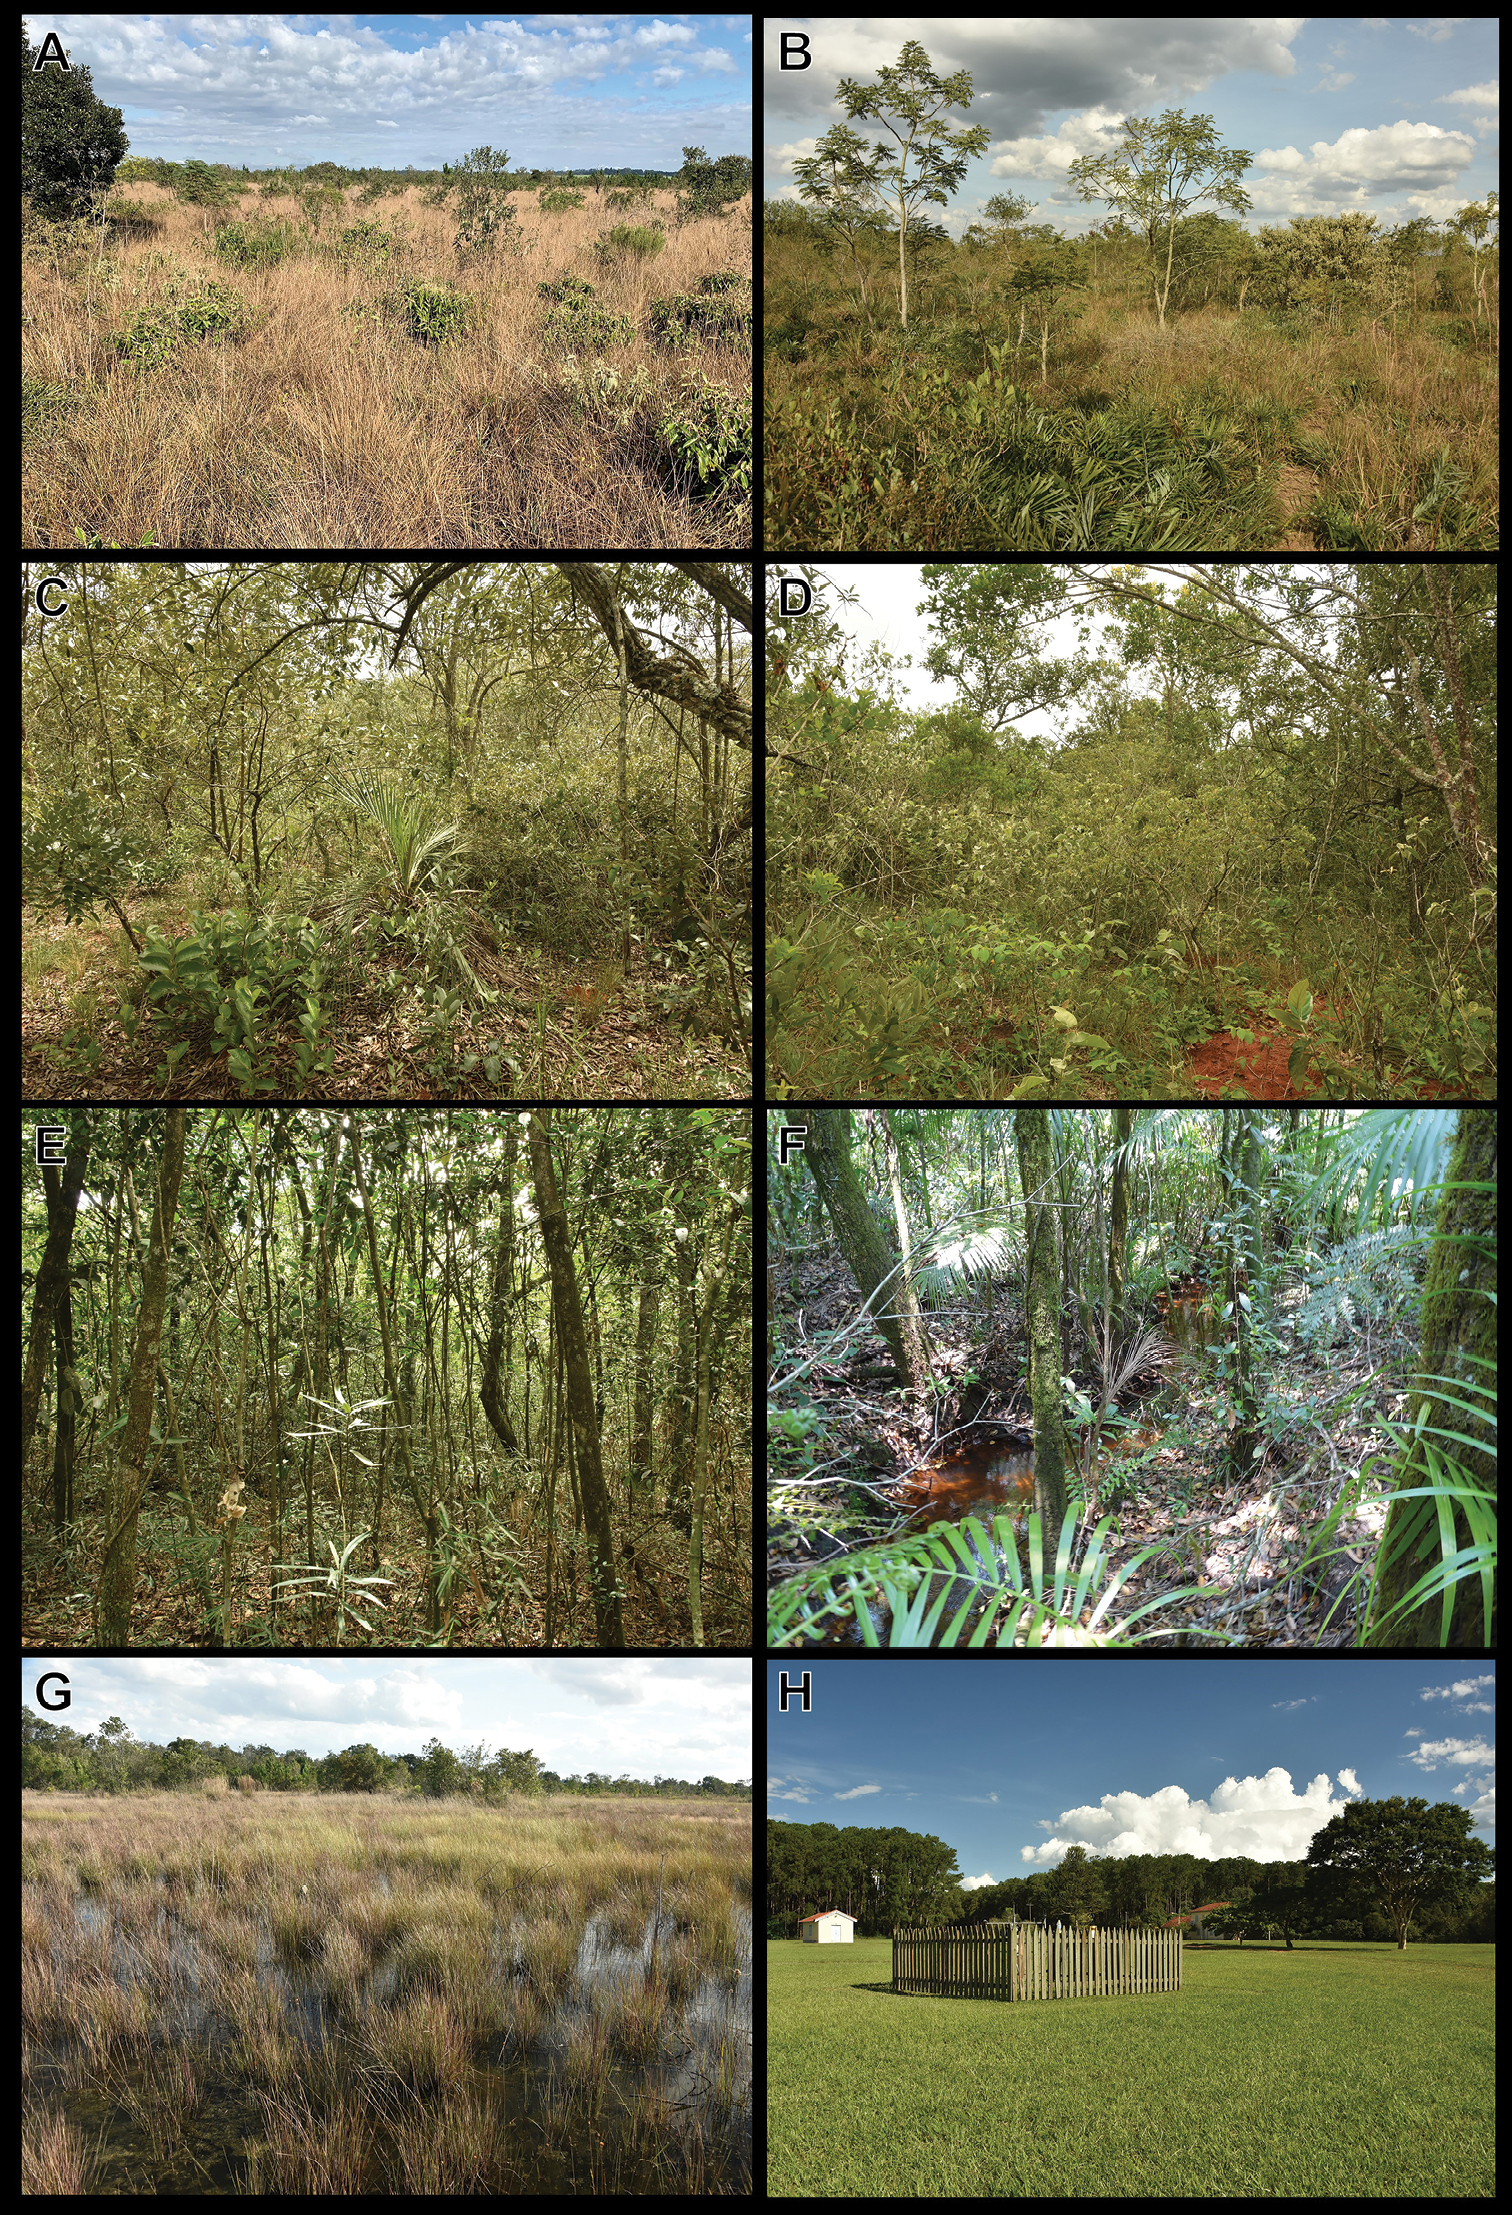 types of natural vegetation